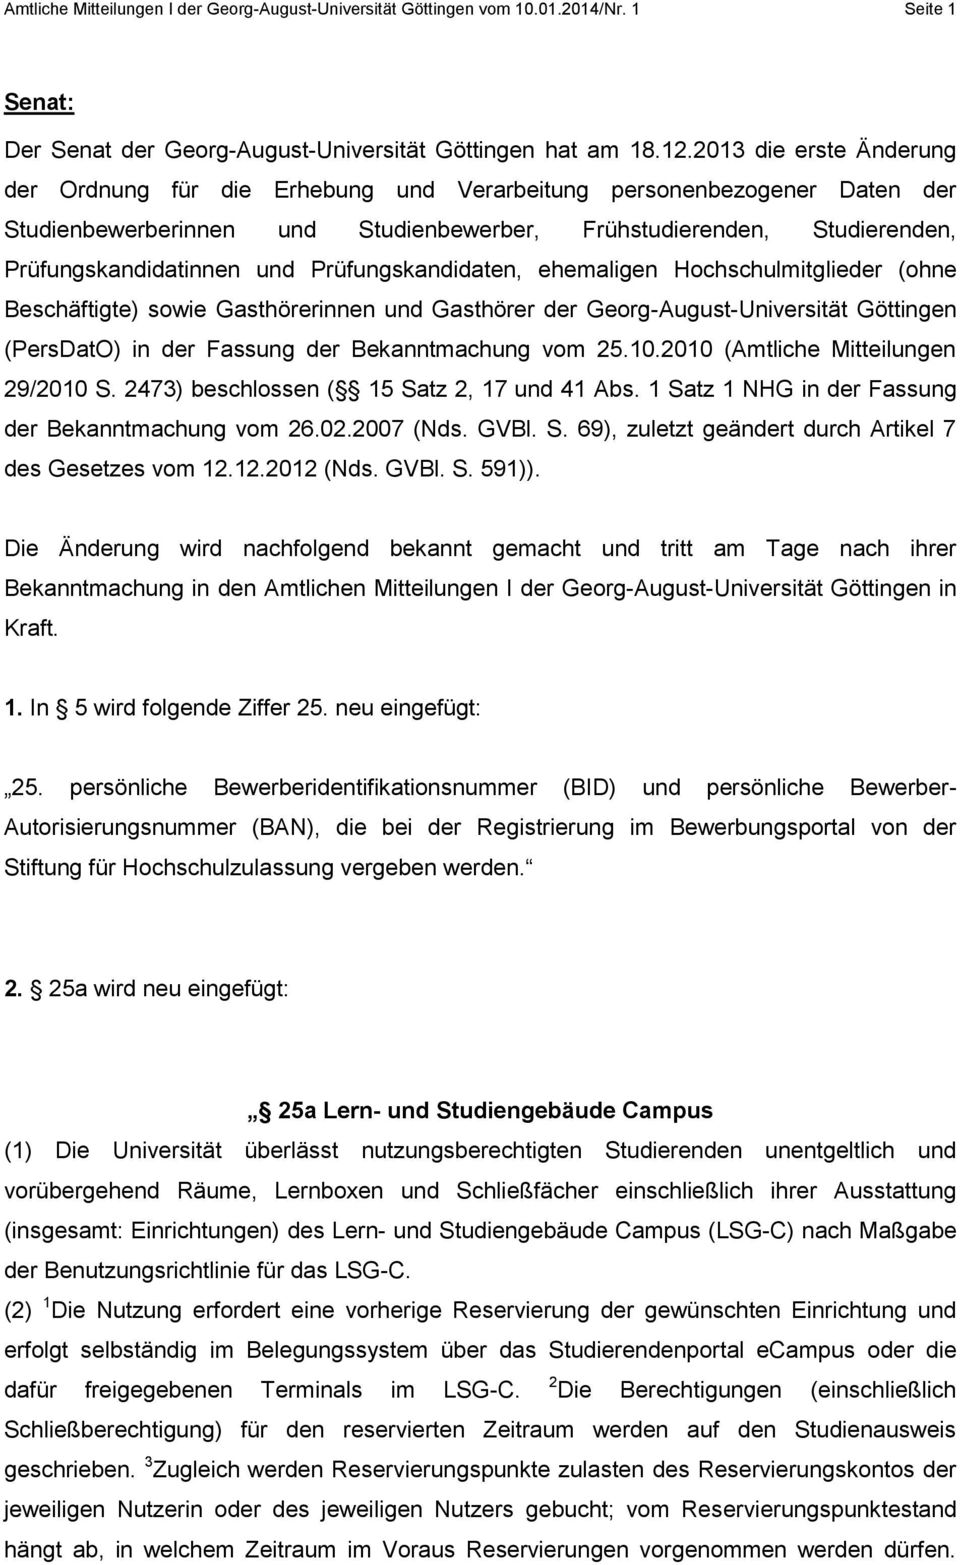 Prüfungskandidaten, ehemaligen Hochschulmitglieder (ohne Beschäftigte) sowie Gasthörerinnen und Gasthörer der Georg-August-Universität Göttingen (PersDatO) in der Fassung der Bekanntmachung vom 25.10.